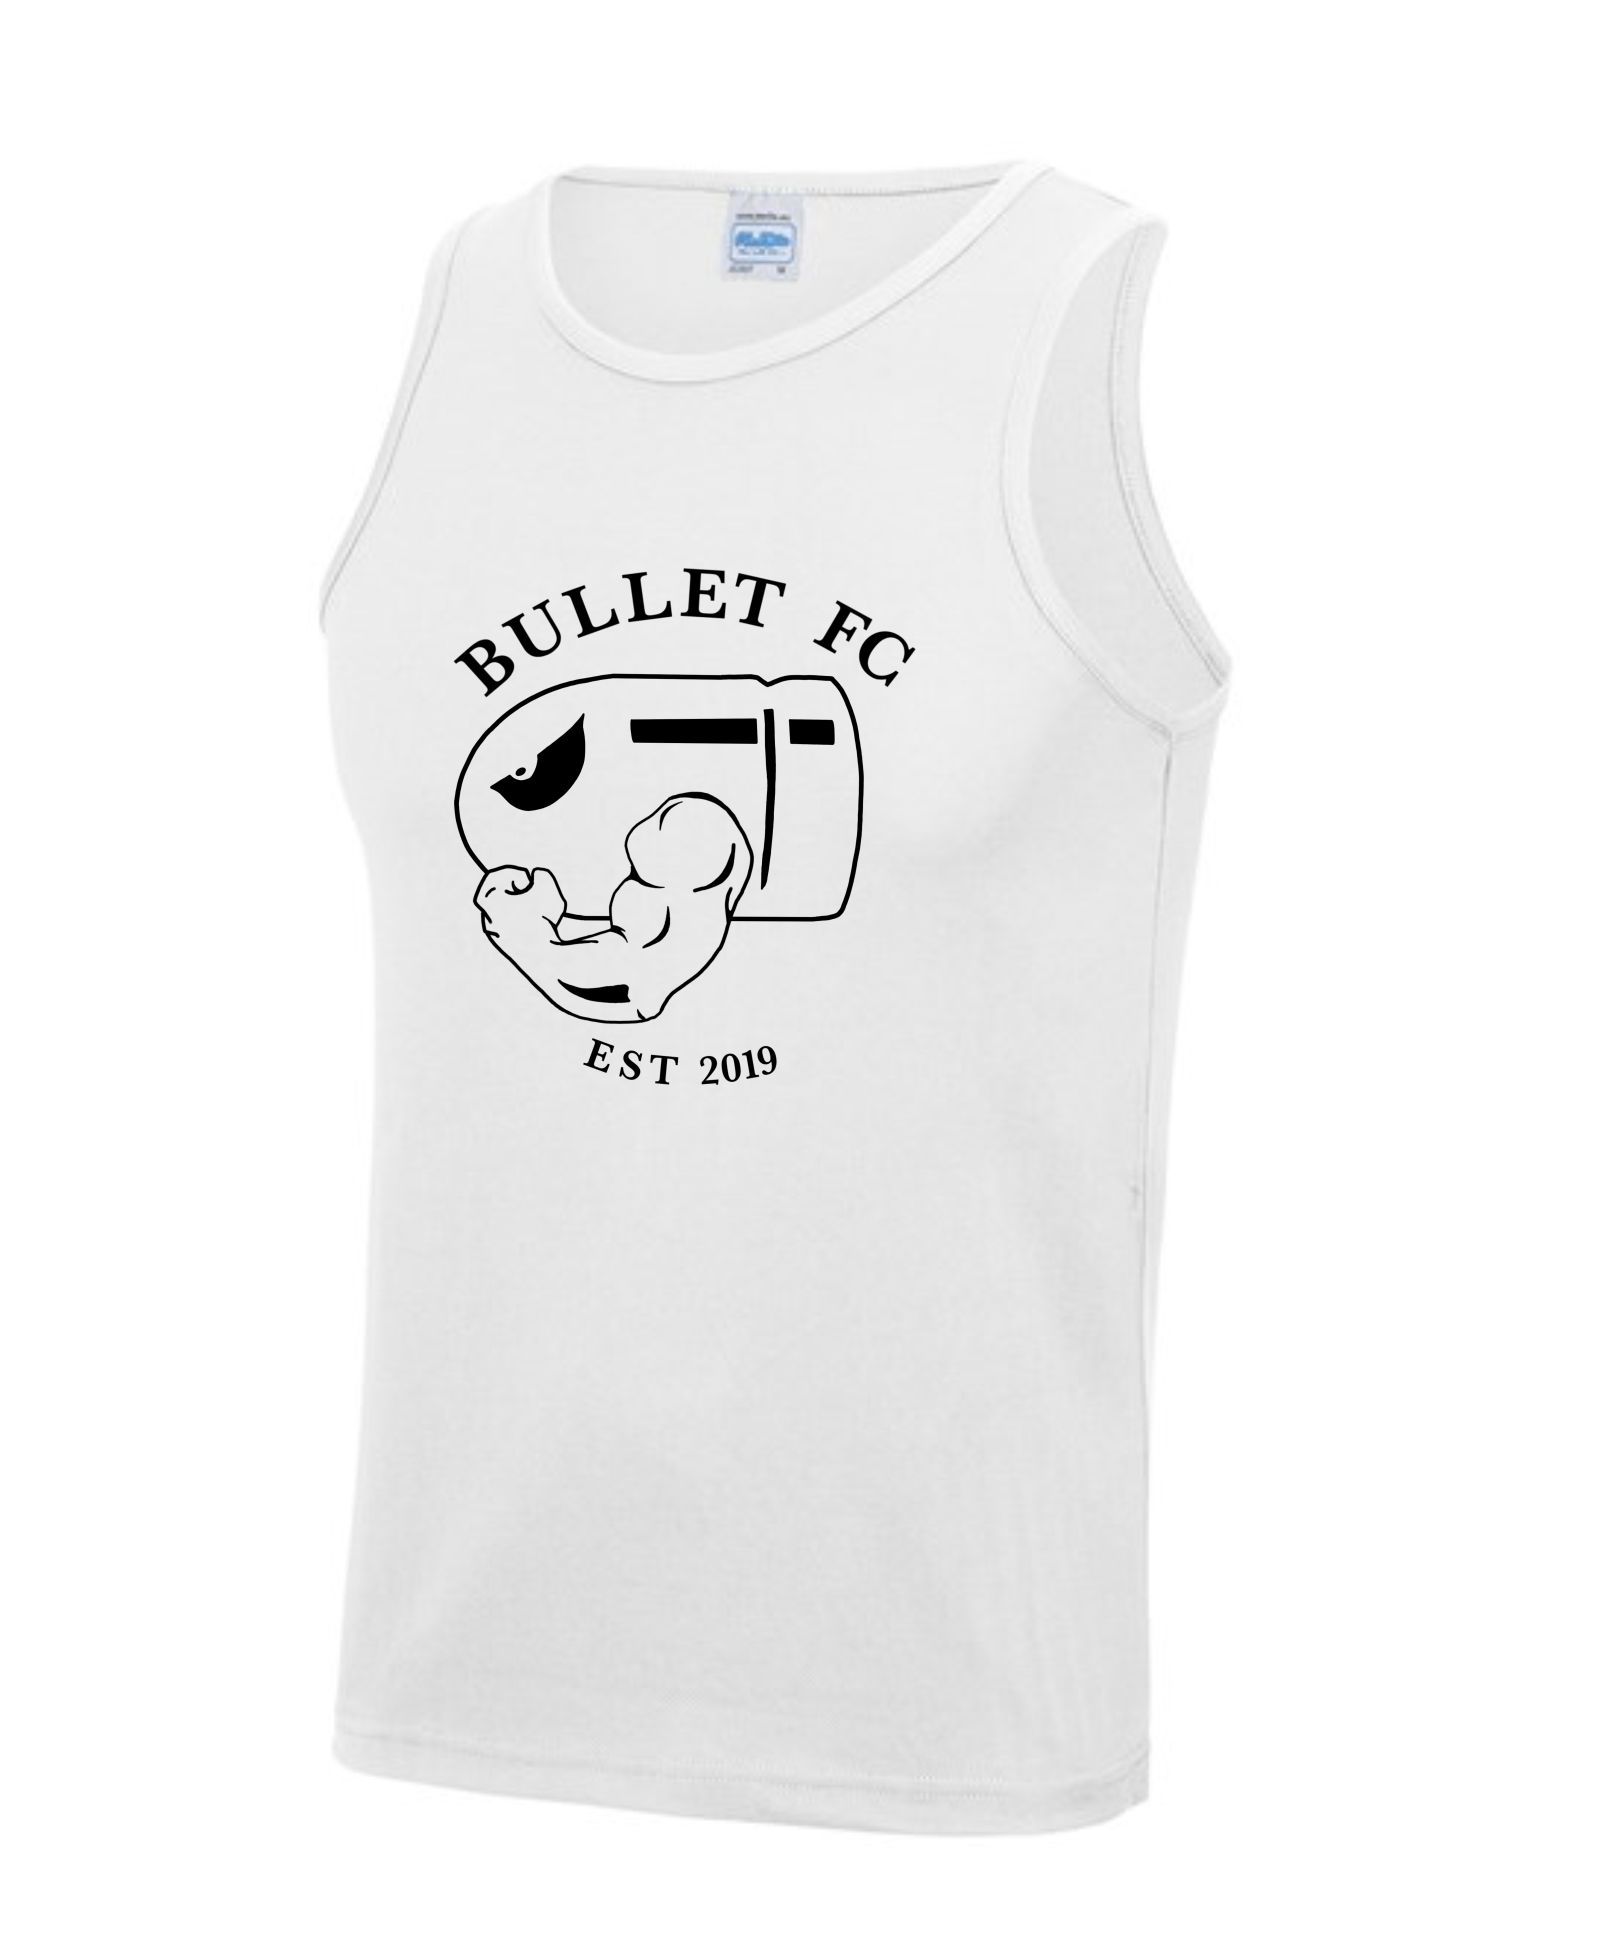 Bullet FC - Gym Vest